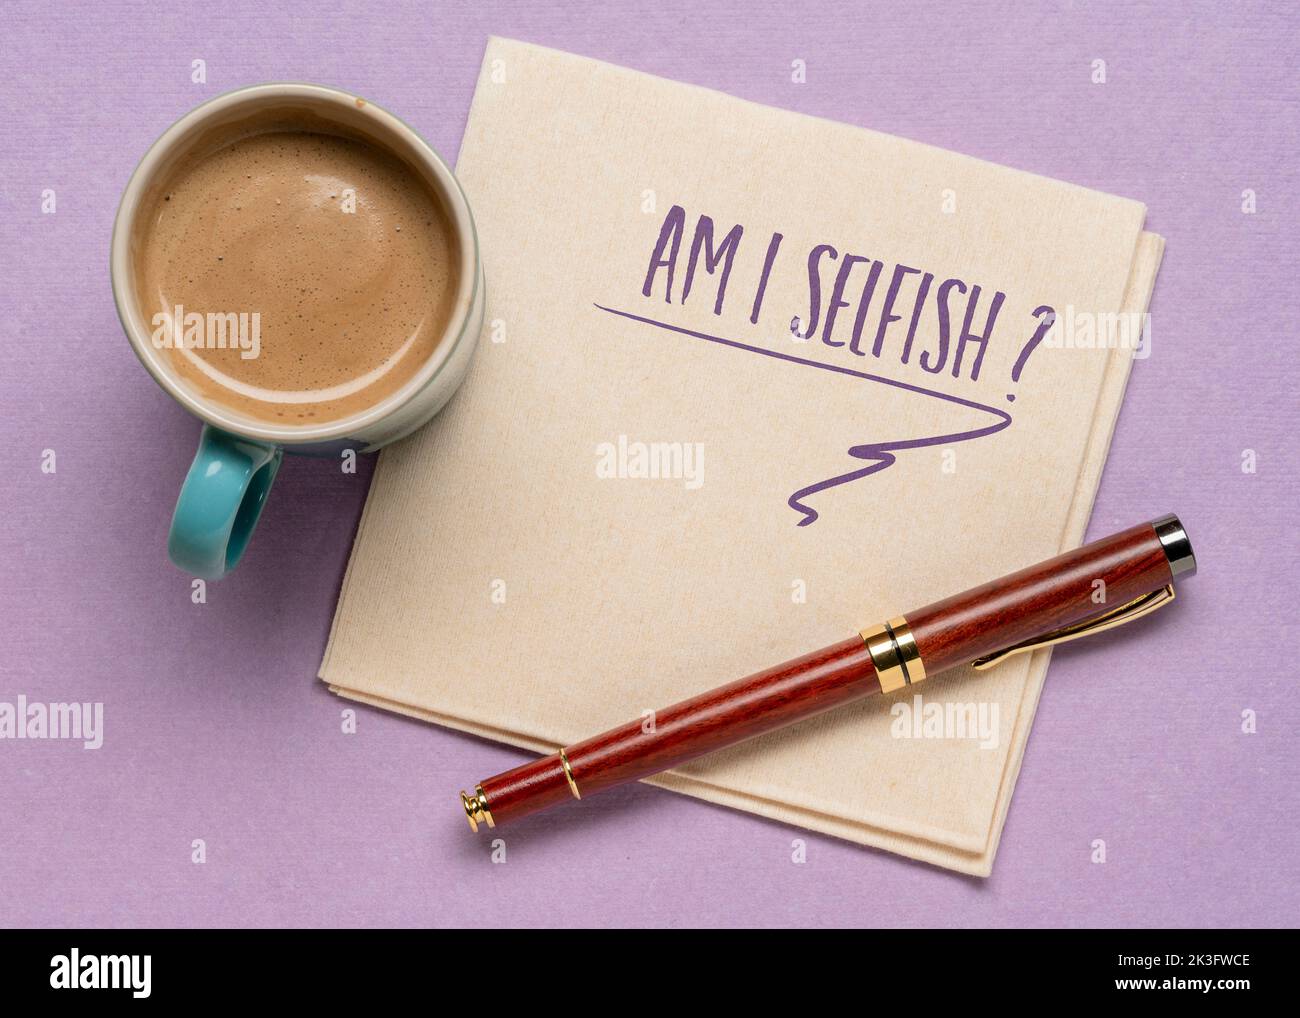 Bin ich egoistisch? Eine Frage handgeschrieben auf einer Serviette, flach lag mit Kaffee. Sorge, Selbstbewusstsein und persönliche Entwicklung. Stockfoto